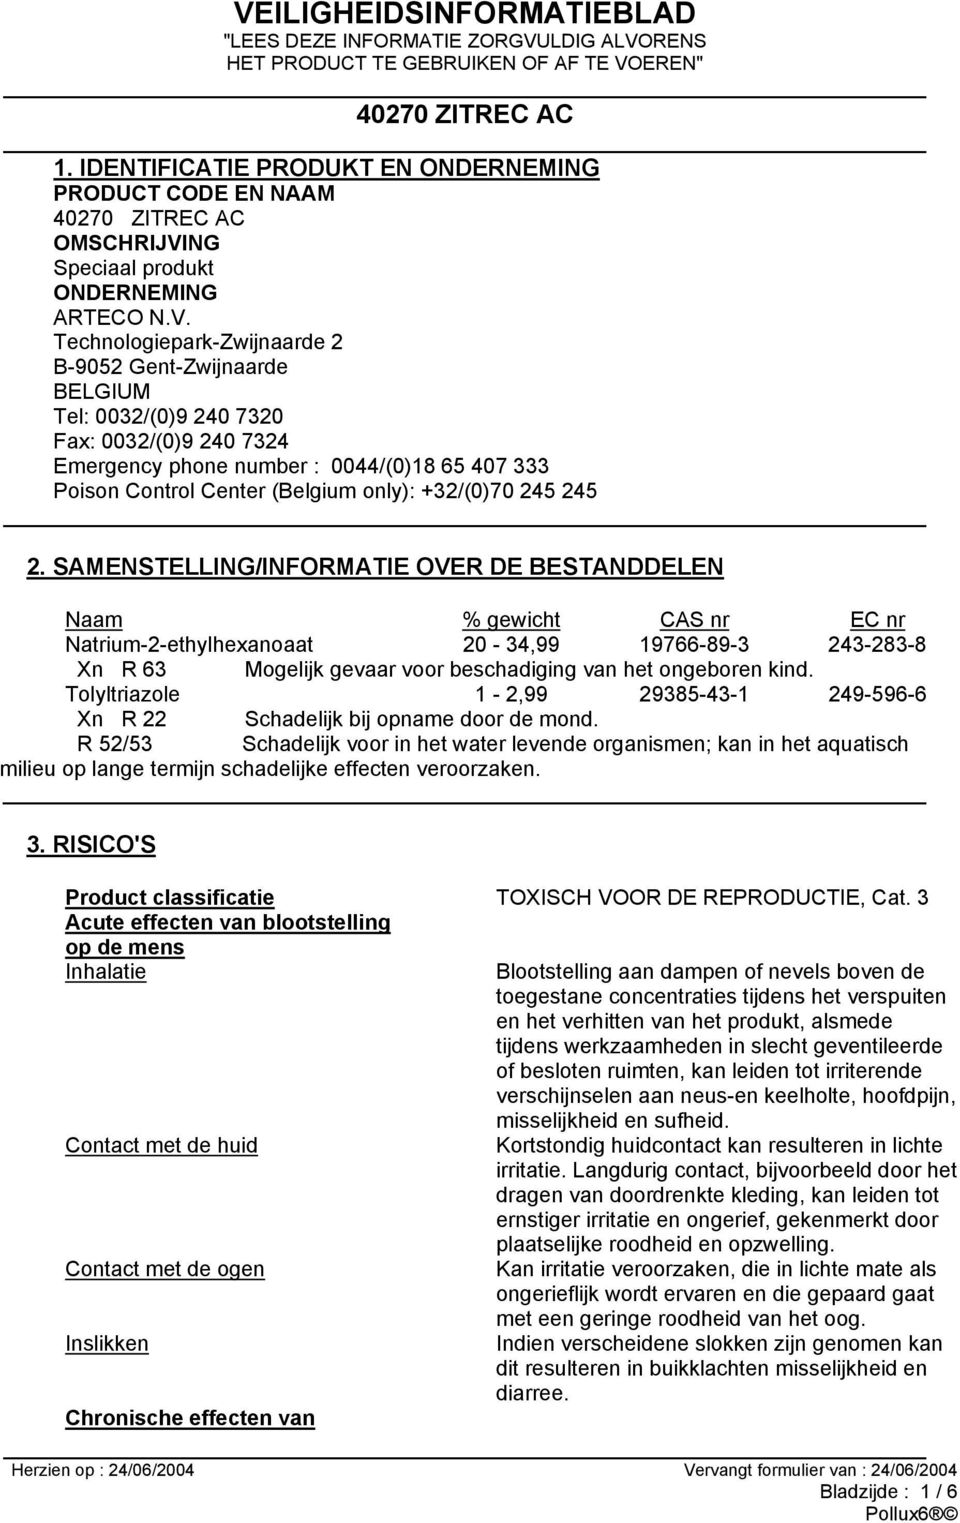 Technologiepark-Zwijnaarde 2 B-9052 Gent-Zwijnaarde BELGIUM Tel: 0032/(0)9 240 7320 Fax: 0032/(0)9 240 7324 Emergency phone number : 0044/(0)18 65 407 333 Poison Control Center (Belgium only):